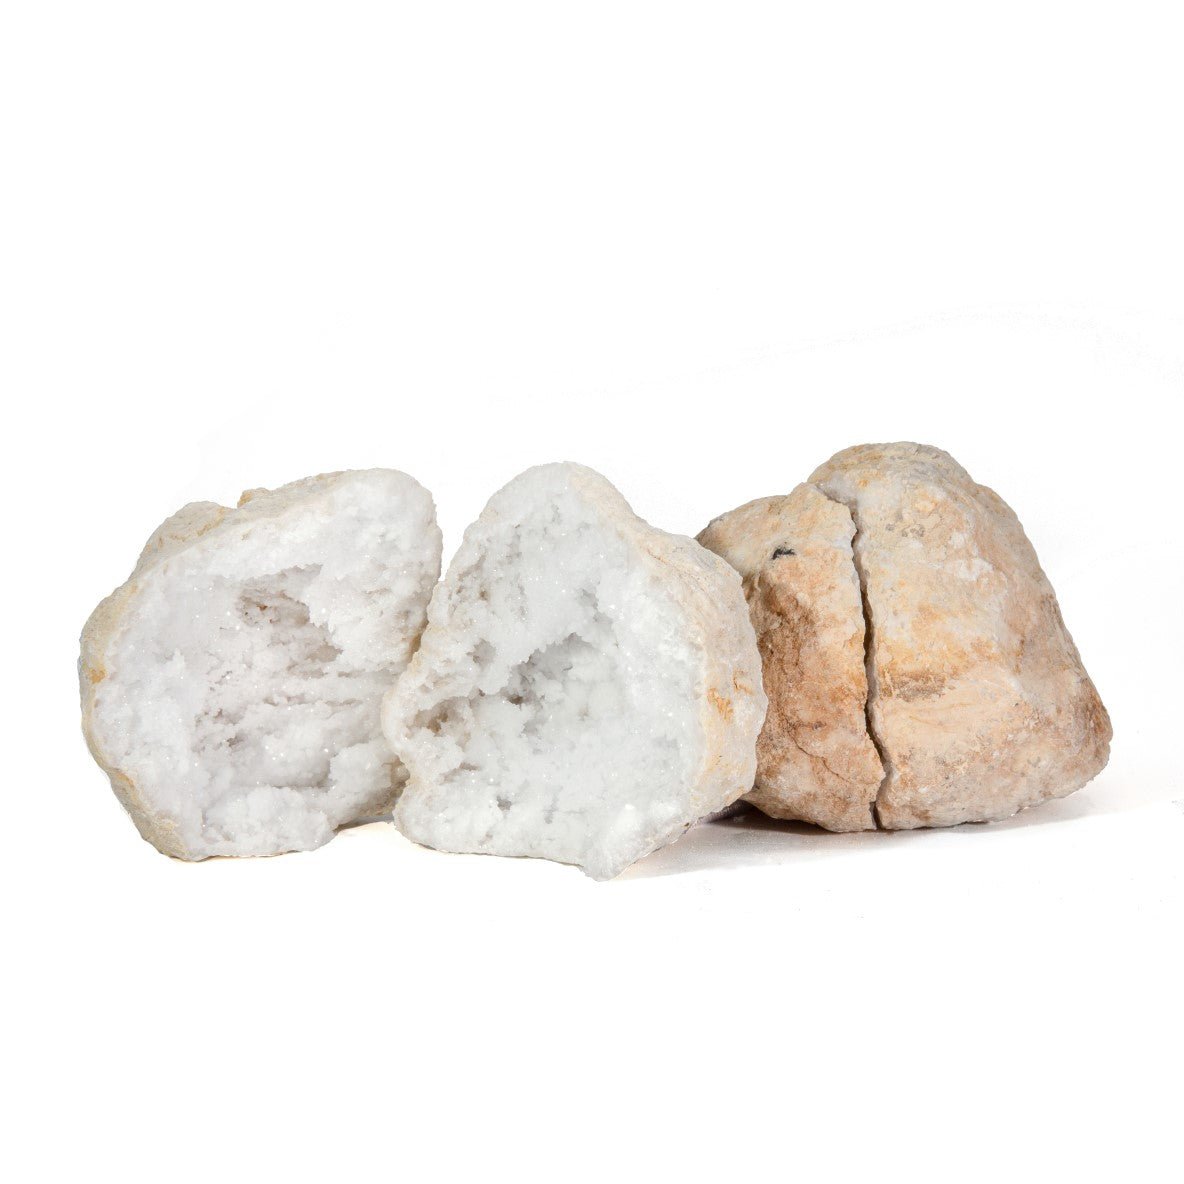 White Quartz Geode Pair .58 lb 3.2 in - Morocco - HHX-270 - Crystalarium